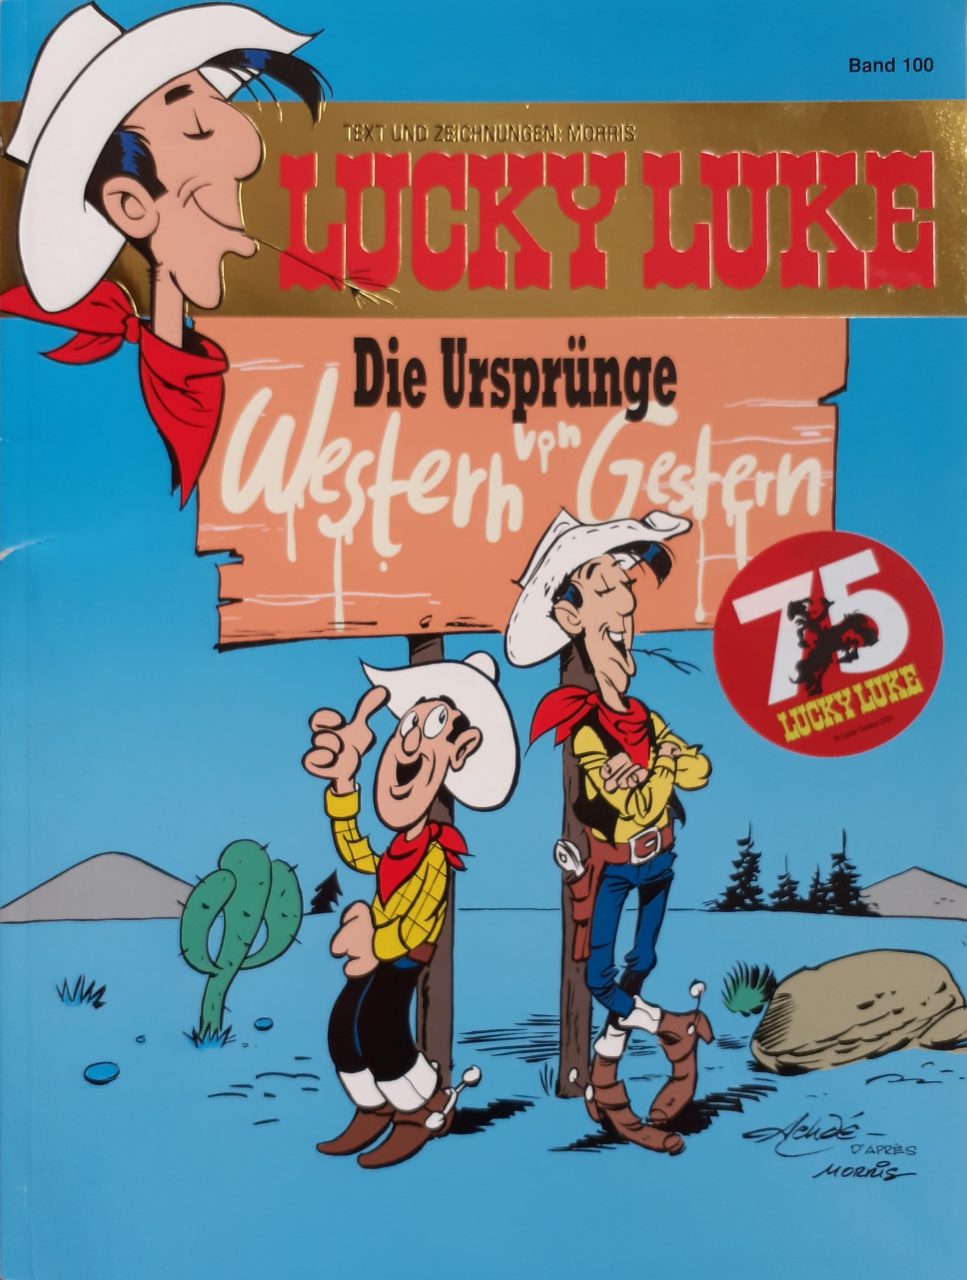 Das ist das Cover der 75-jährigen Jubiläumsausgabe Lucky Luke: "Die Ursprünge - Western von Gestern".